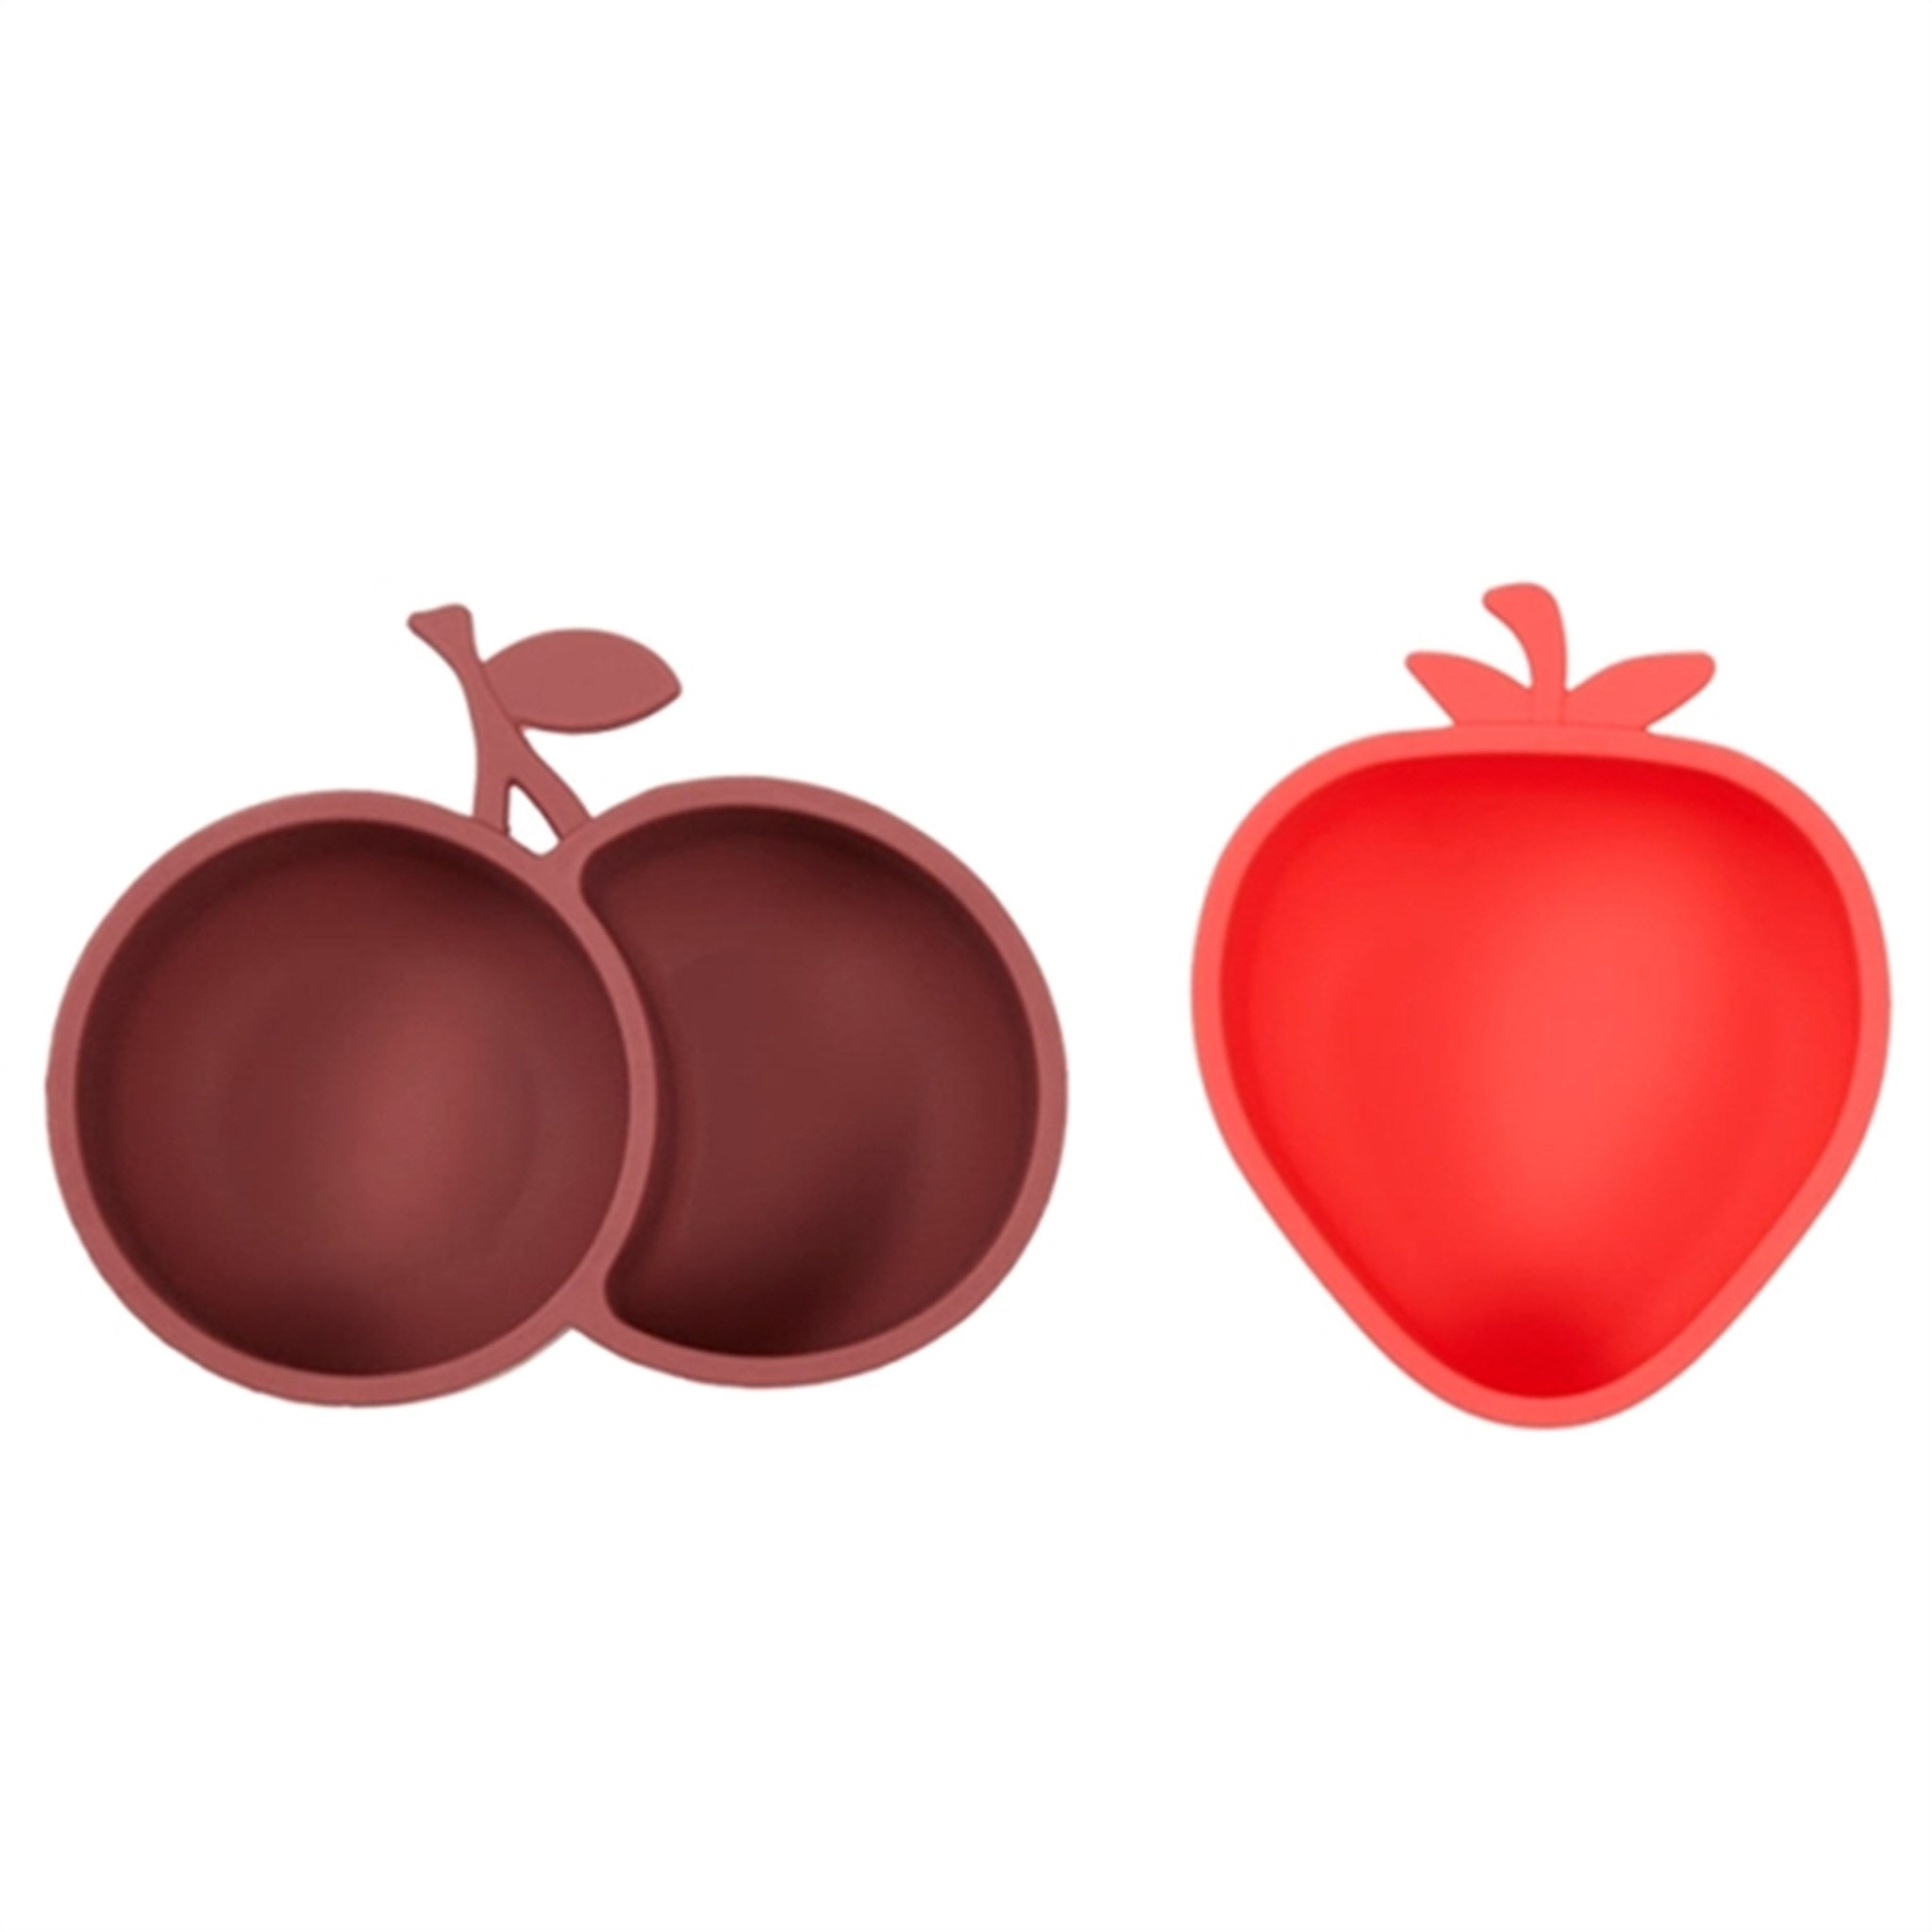 OYOY Yummy Snack Bowls Strawberry & Cherry Cherry Red/Nutmeg